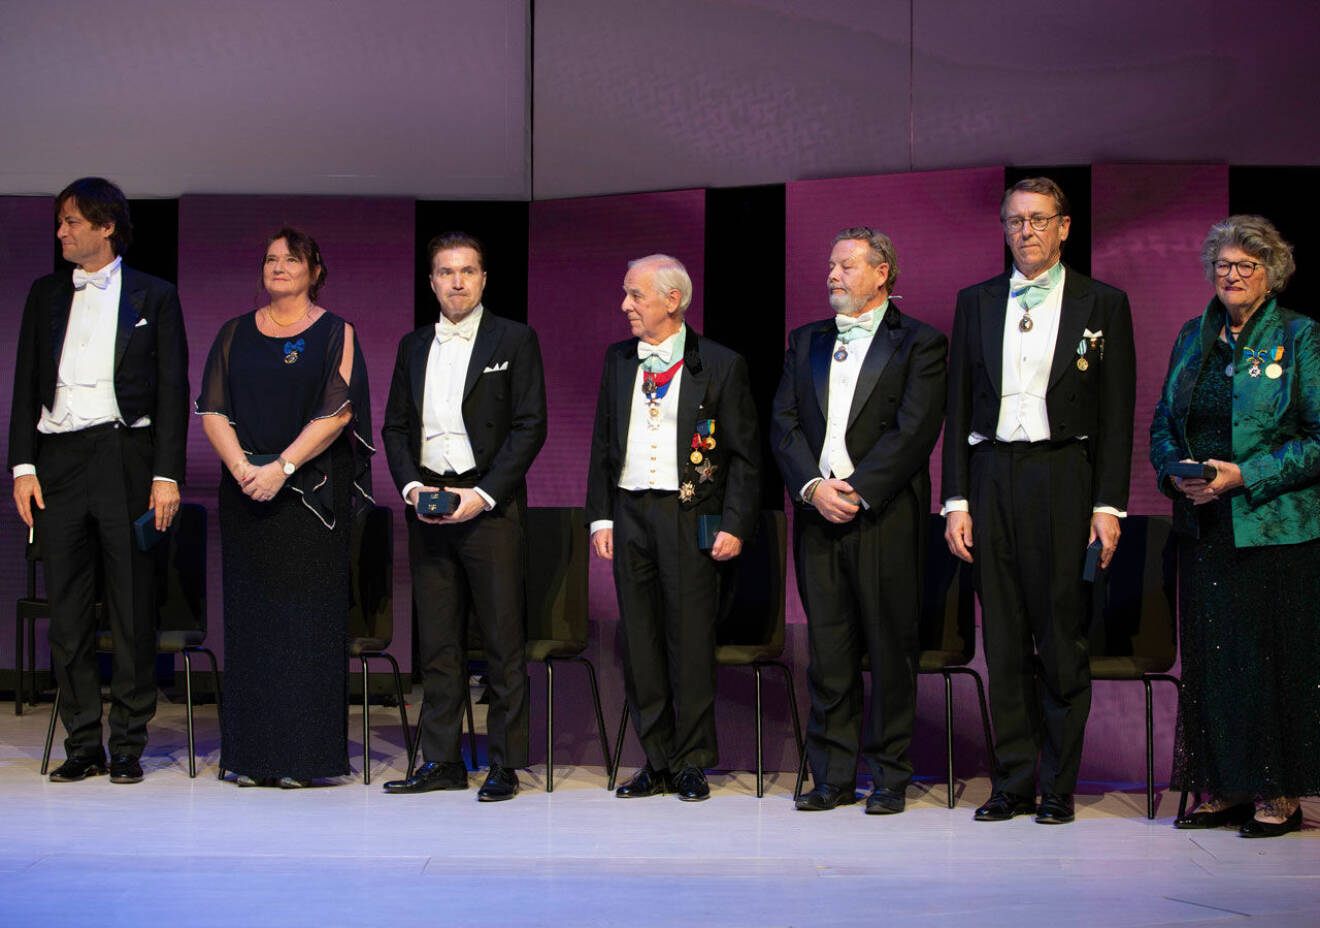 IVA:s medaljörer och hedersledamöter 2019: Max Tegmark, Lena Olving, Martin Lorentzon, Hans Dalborg, Peter Wallenberg, Jan-Eric Sundgren och Mary Walshok.